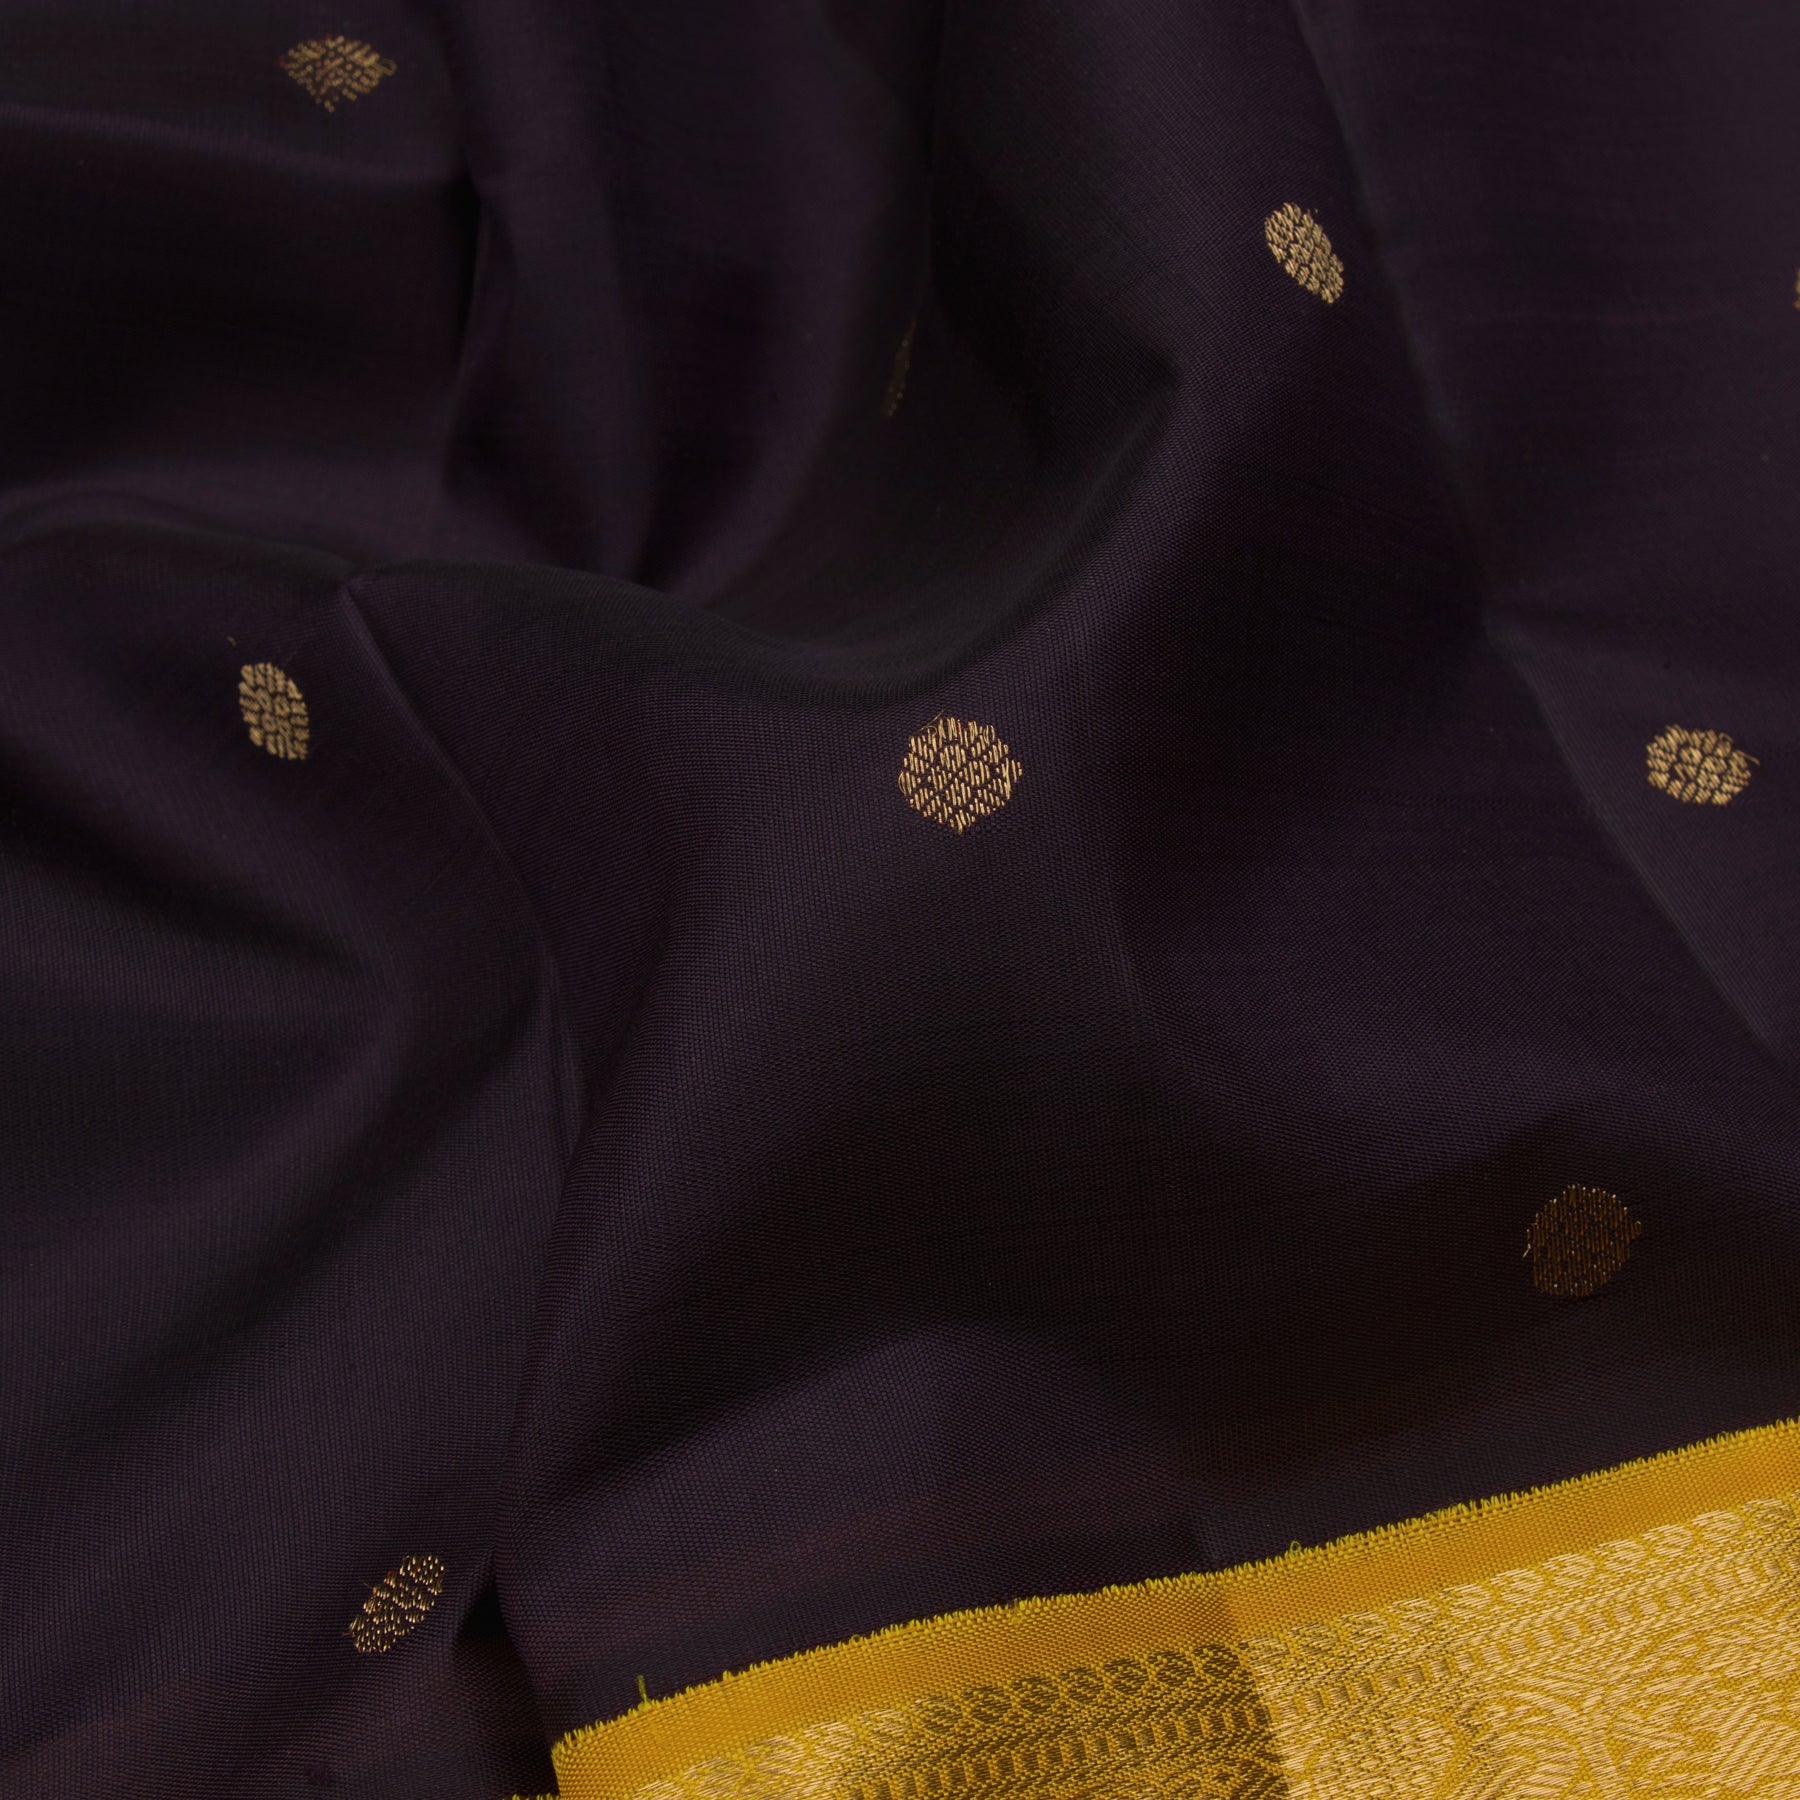 Kanakavalli Kanjivaram Silk Sari 23-110-HS001-10384 - Fabric View